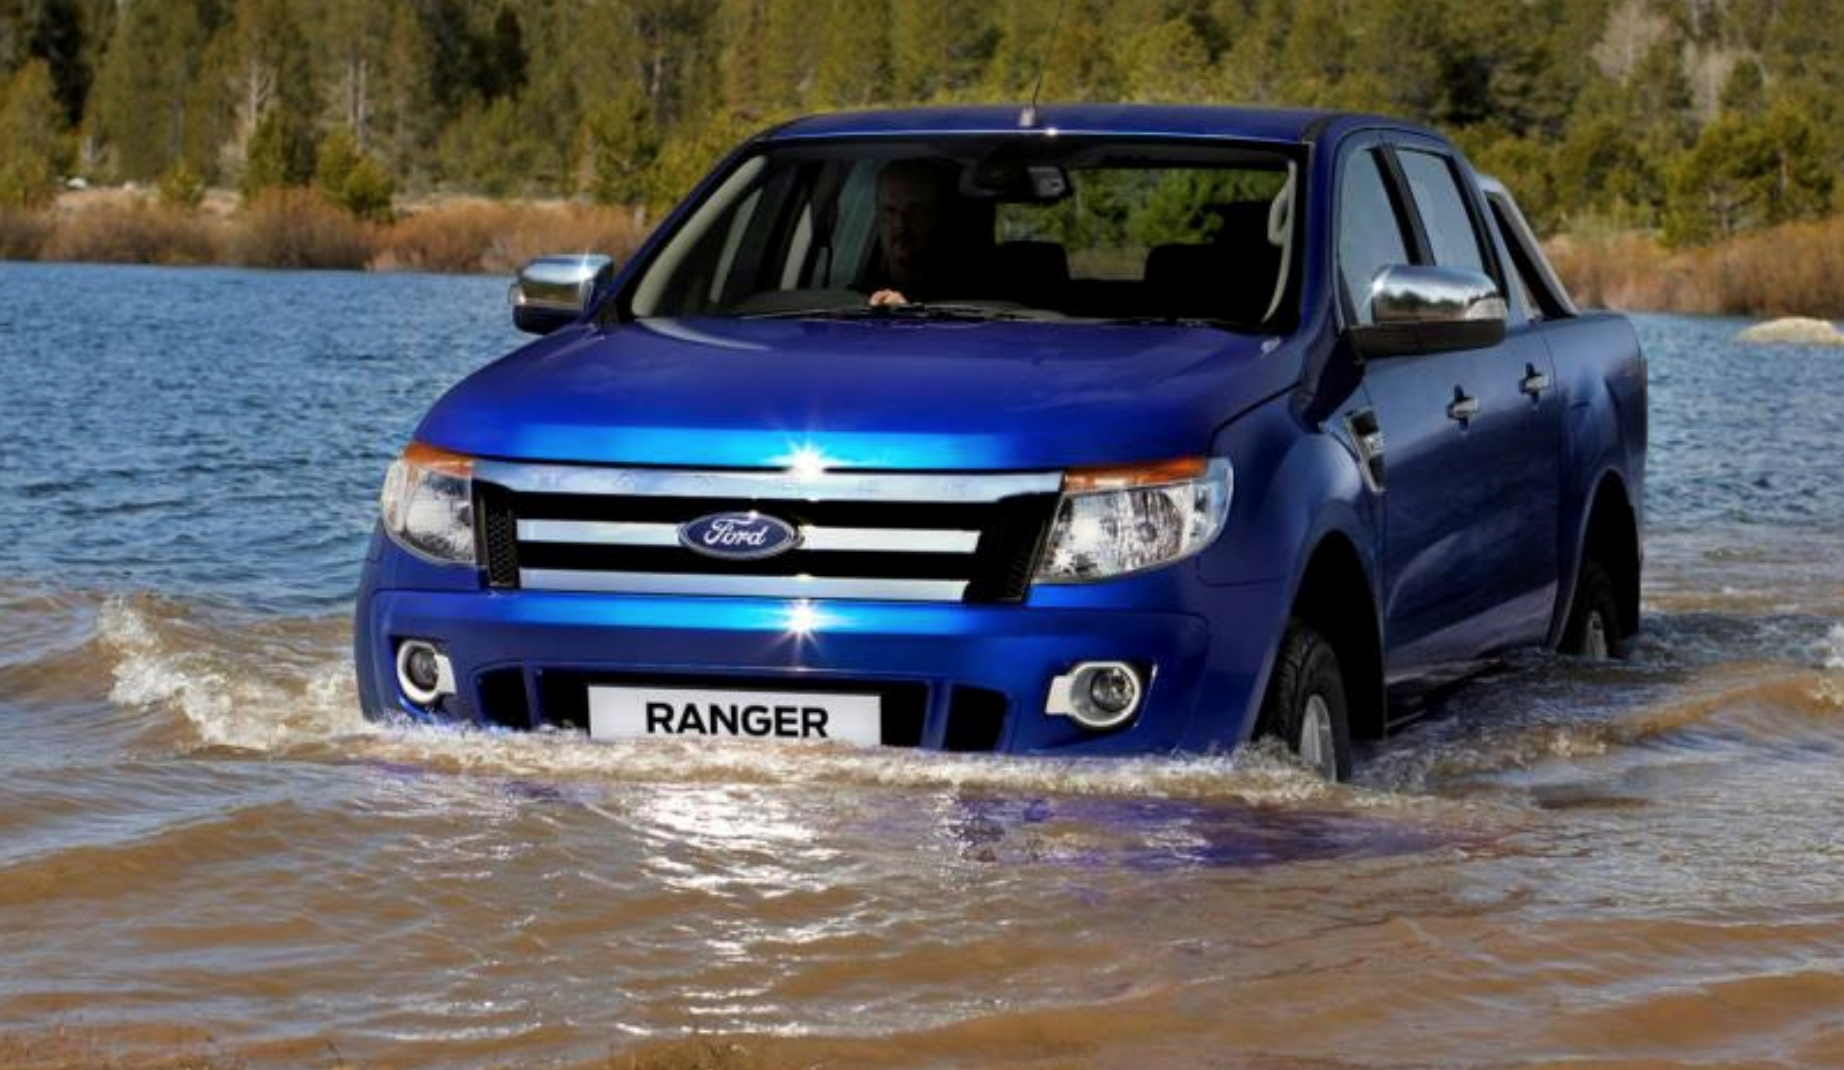 Những điều cần lưu ý khi lái xe qua đường ngập lụt